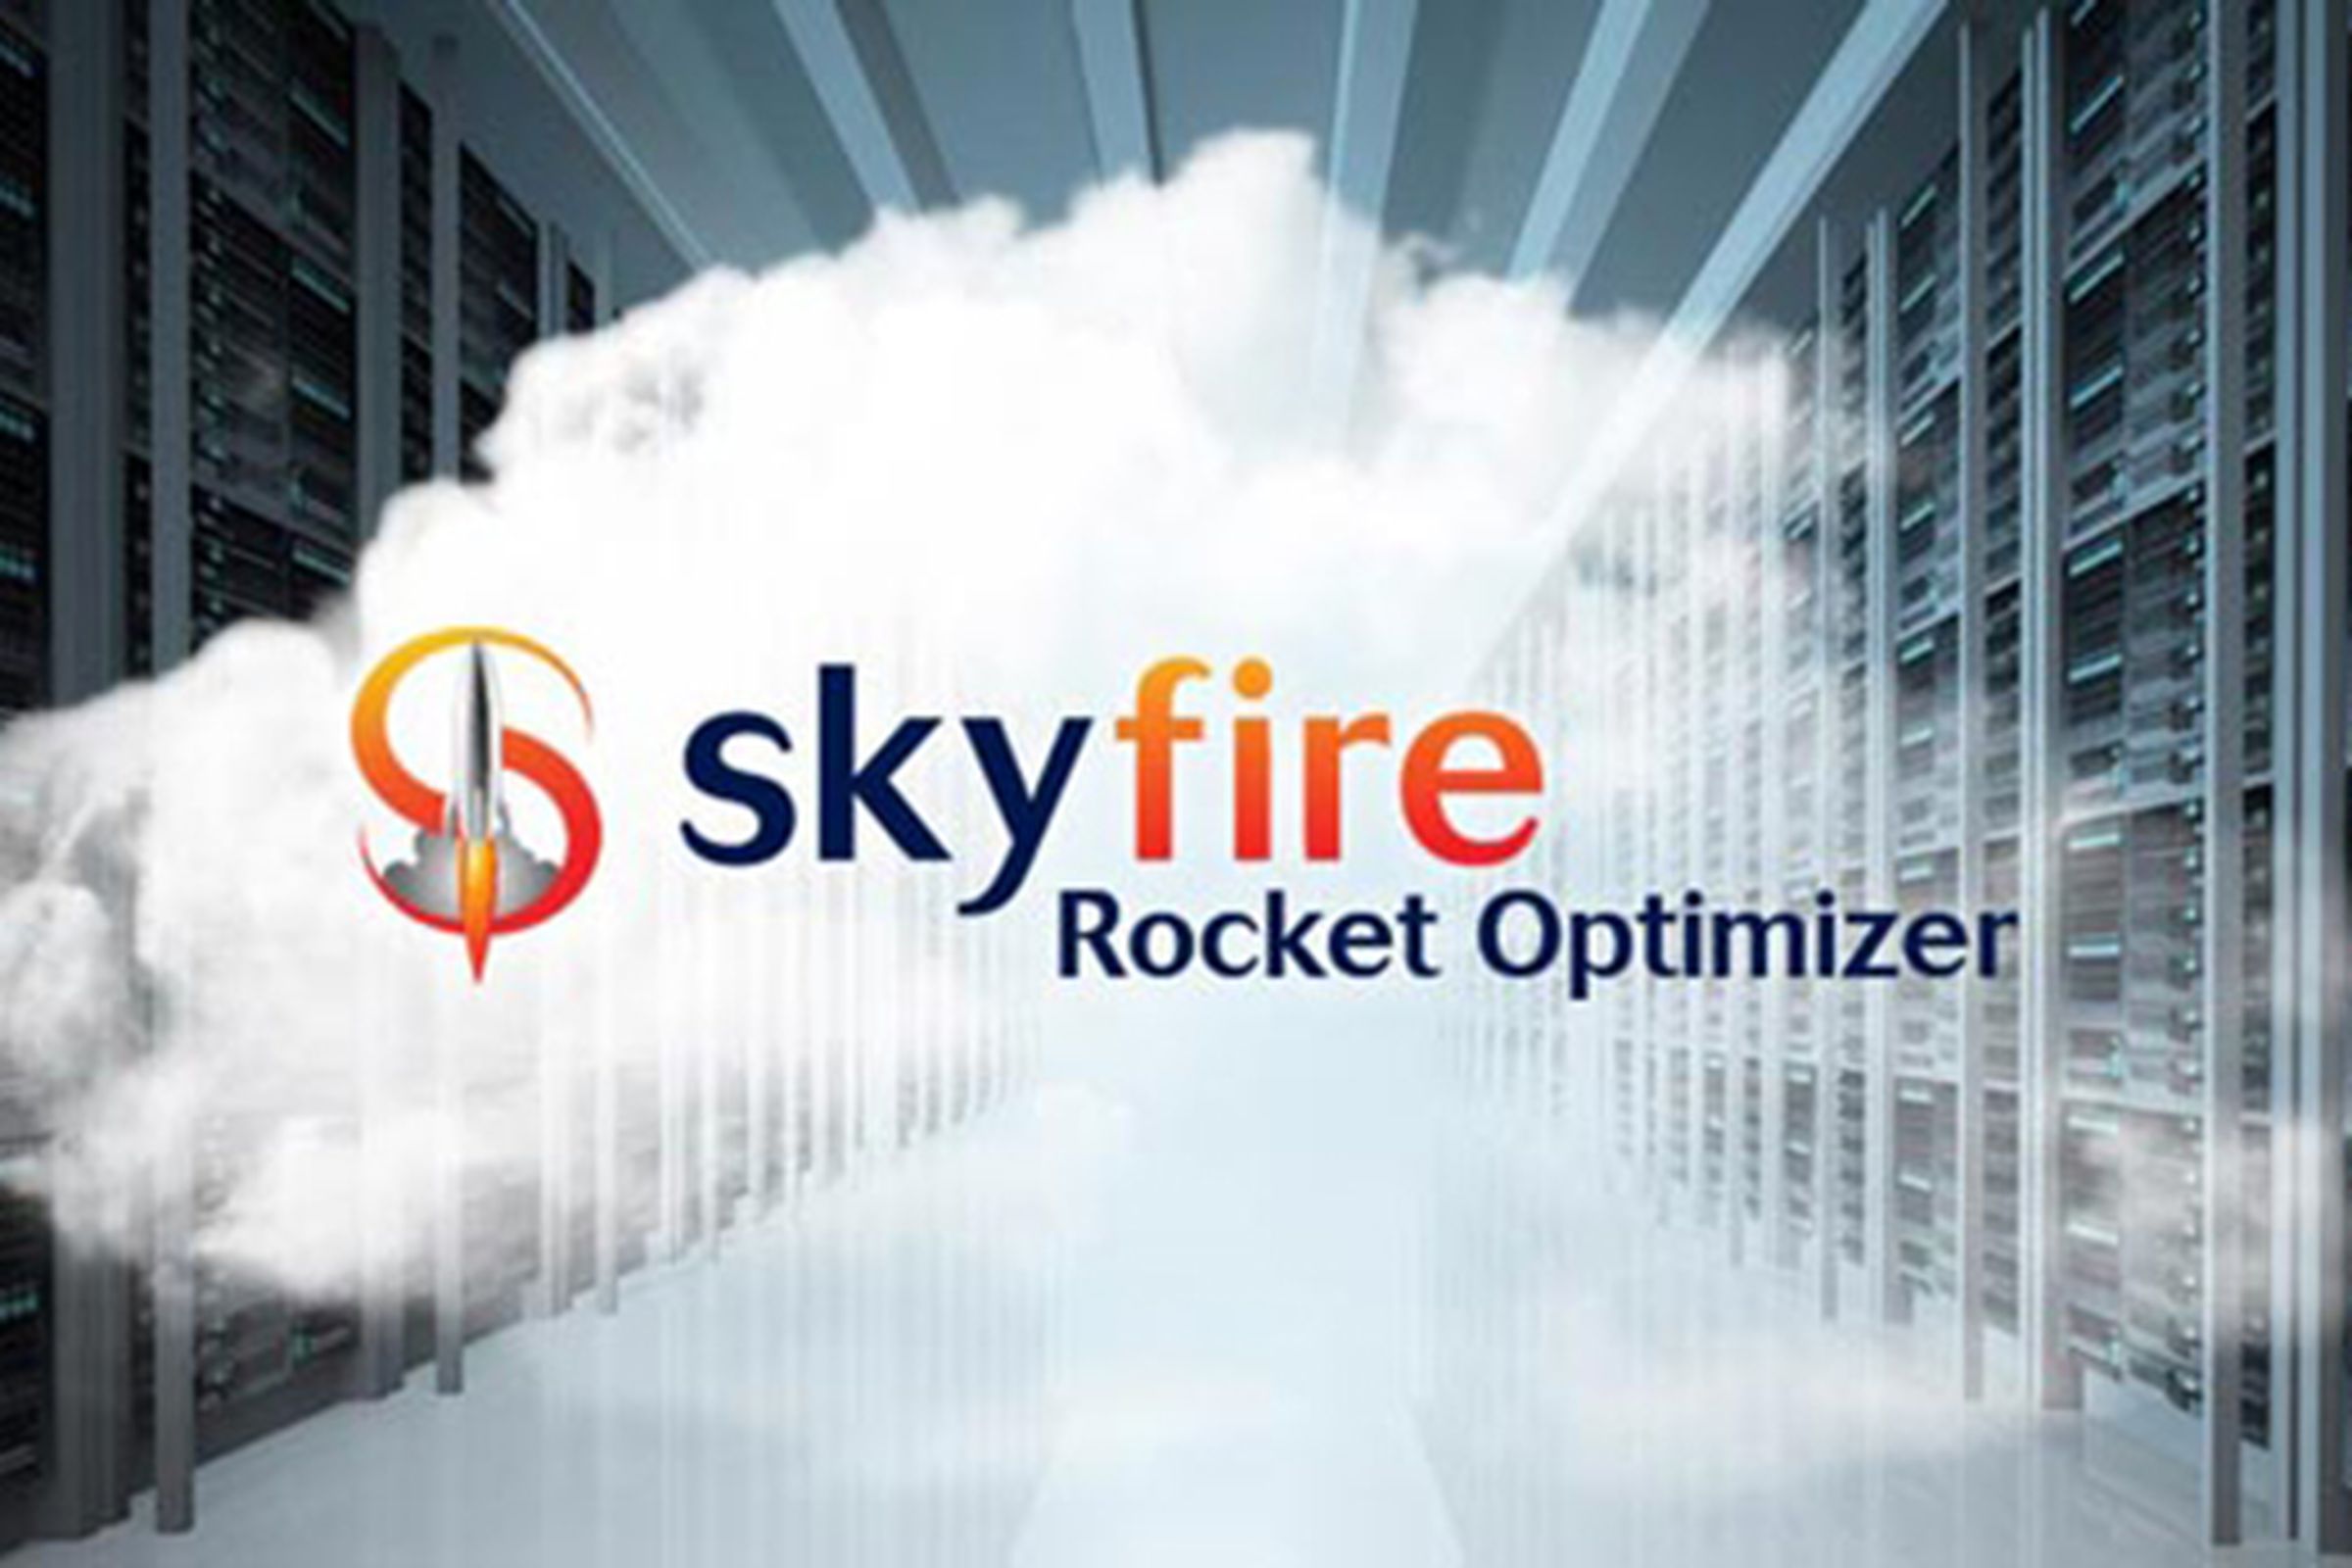 skyfire rocket optimizer